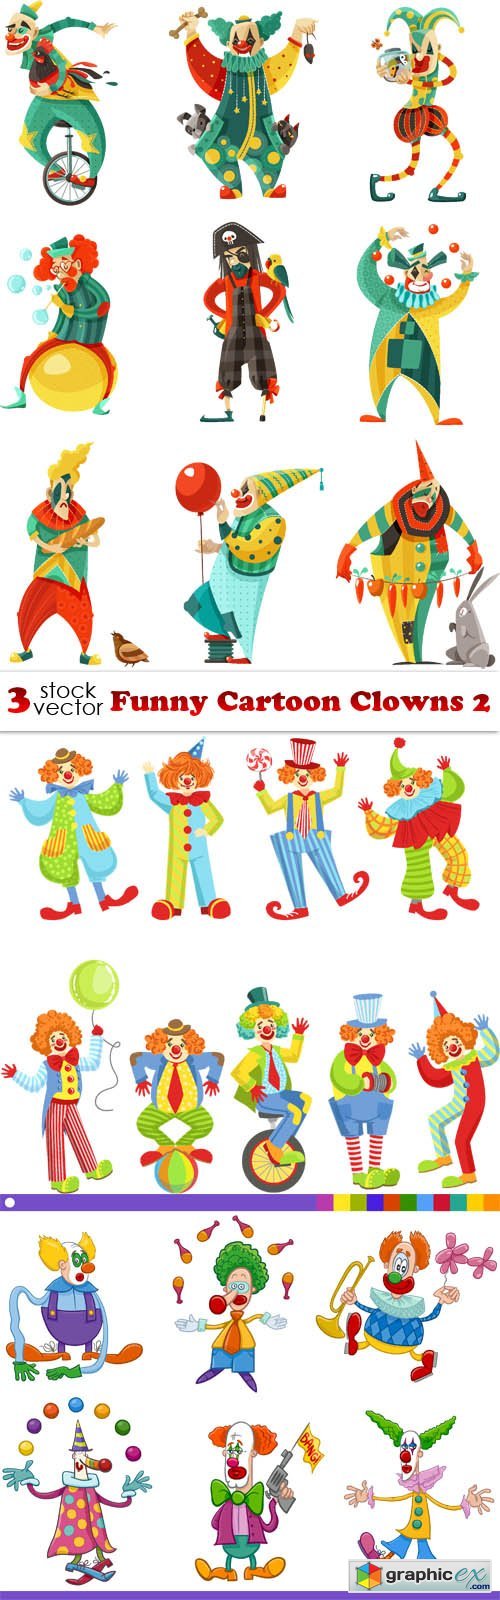 Funny Cartoon Clowns 2